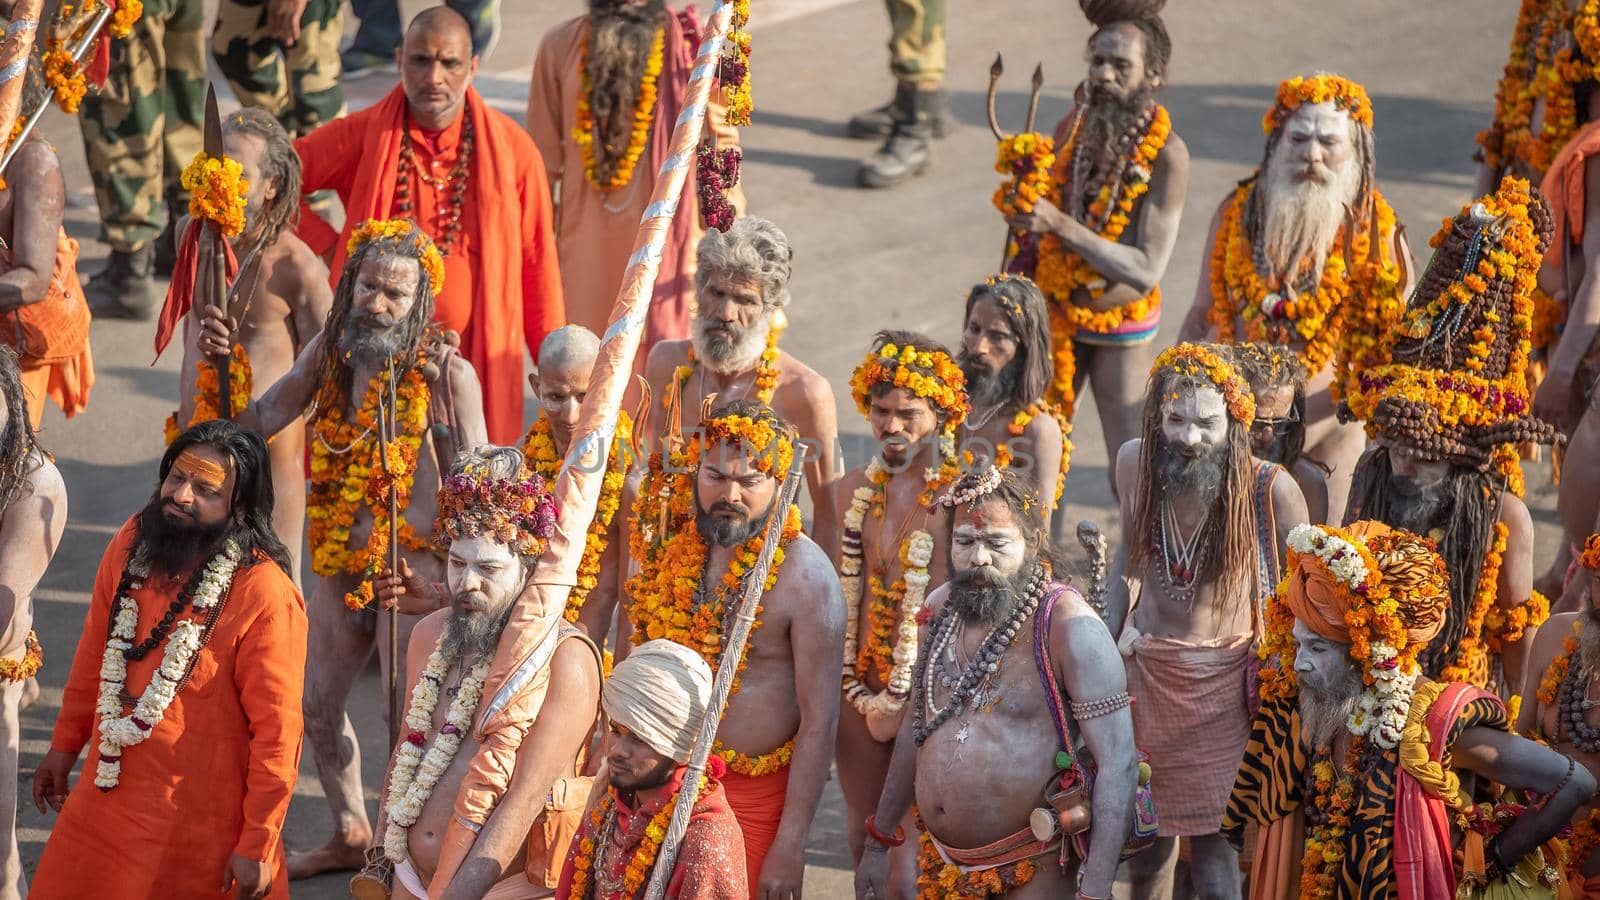 Indian sadhus coming to Kumbh Mela, Royal welcome. Sadhus sitting wearing garland by stocksvids